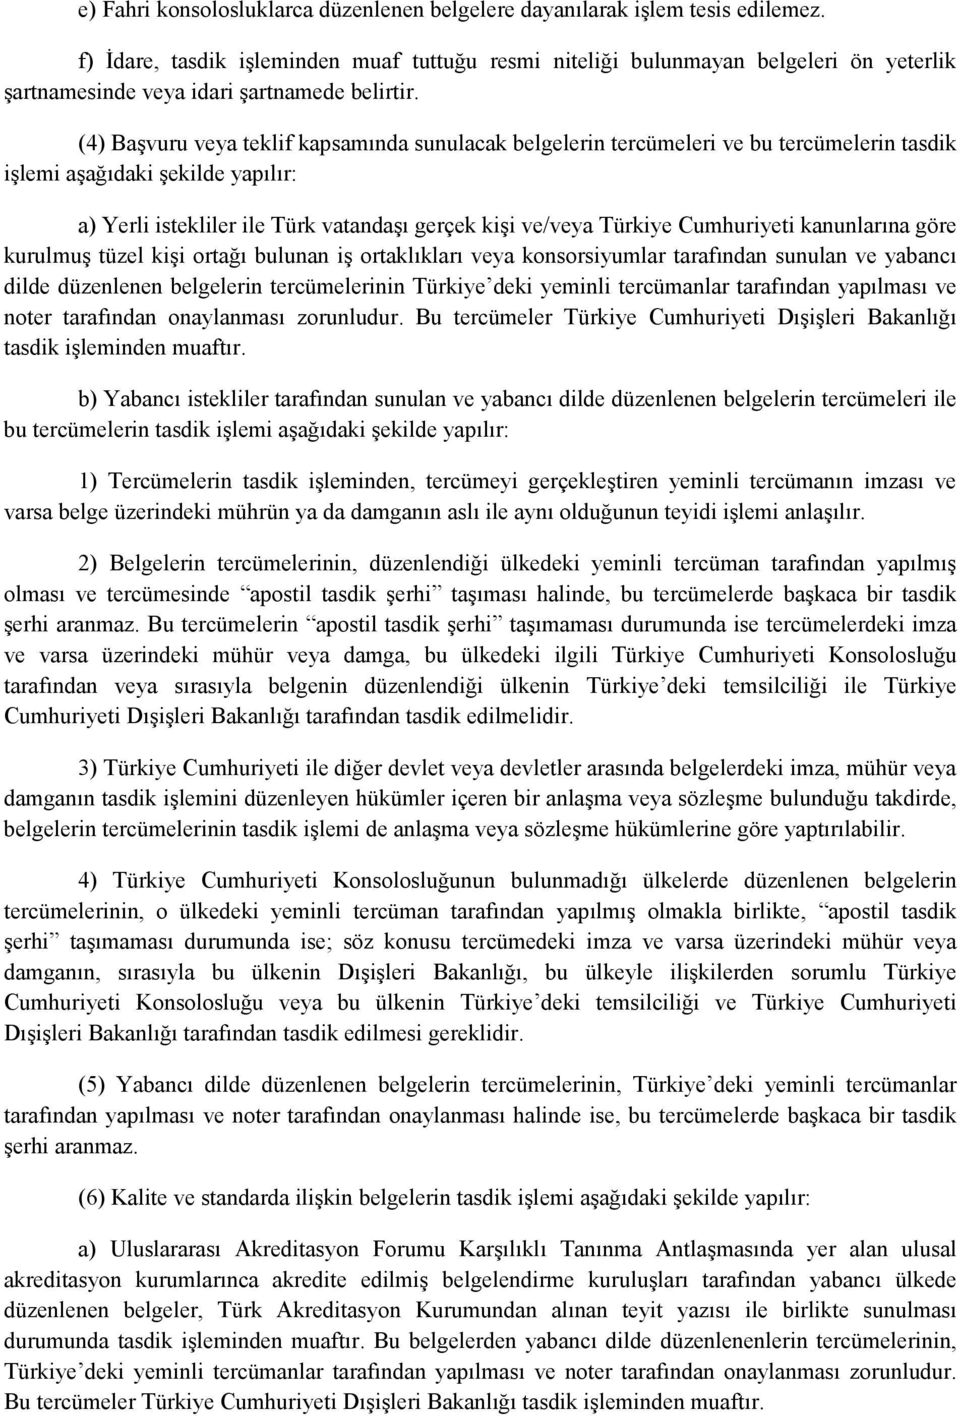 (4) Başvuru veya teklif kapsamında sunulacak belgelerin tercümeleri ve bu tercümelerin tasdik işlemi aşağıdaki şekilde yapılır: a) Yerli istekliler ile Türk vatandaşı gerçek kişi ve/veya Türkiye